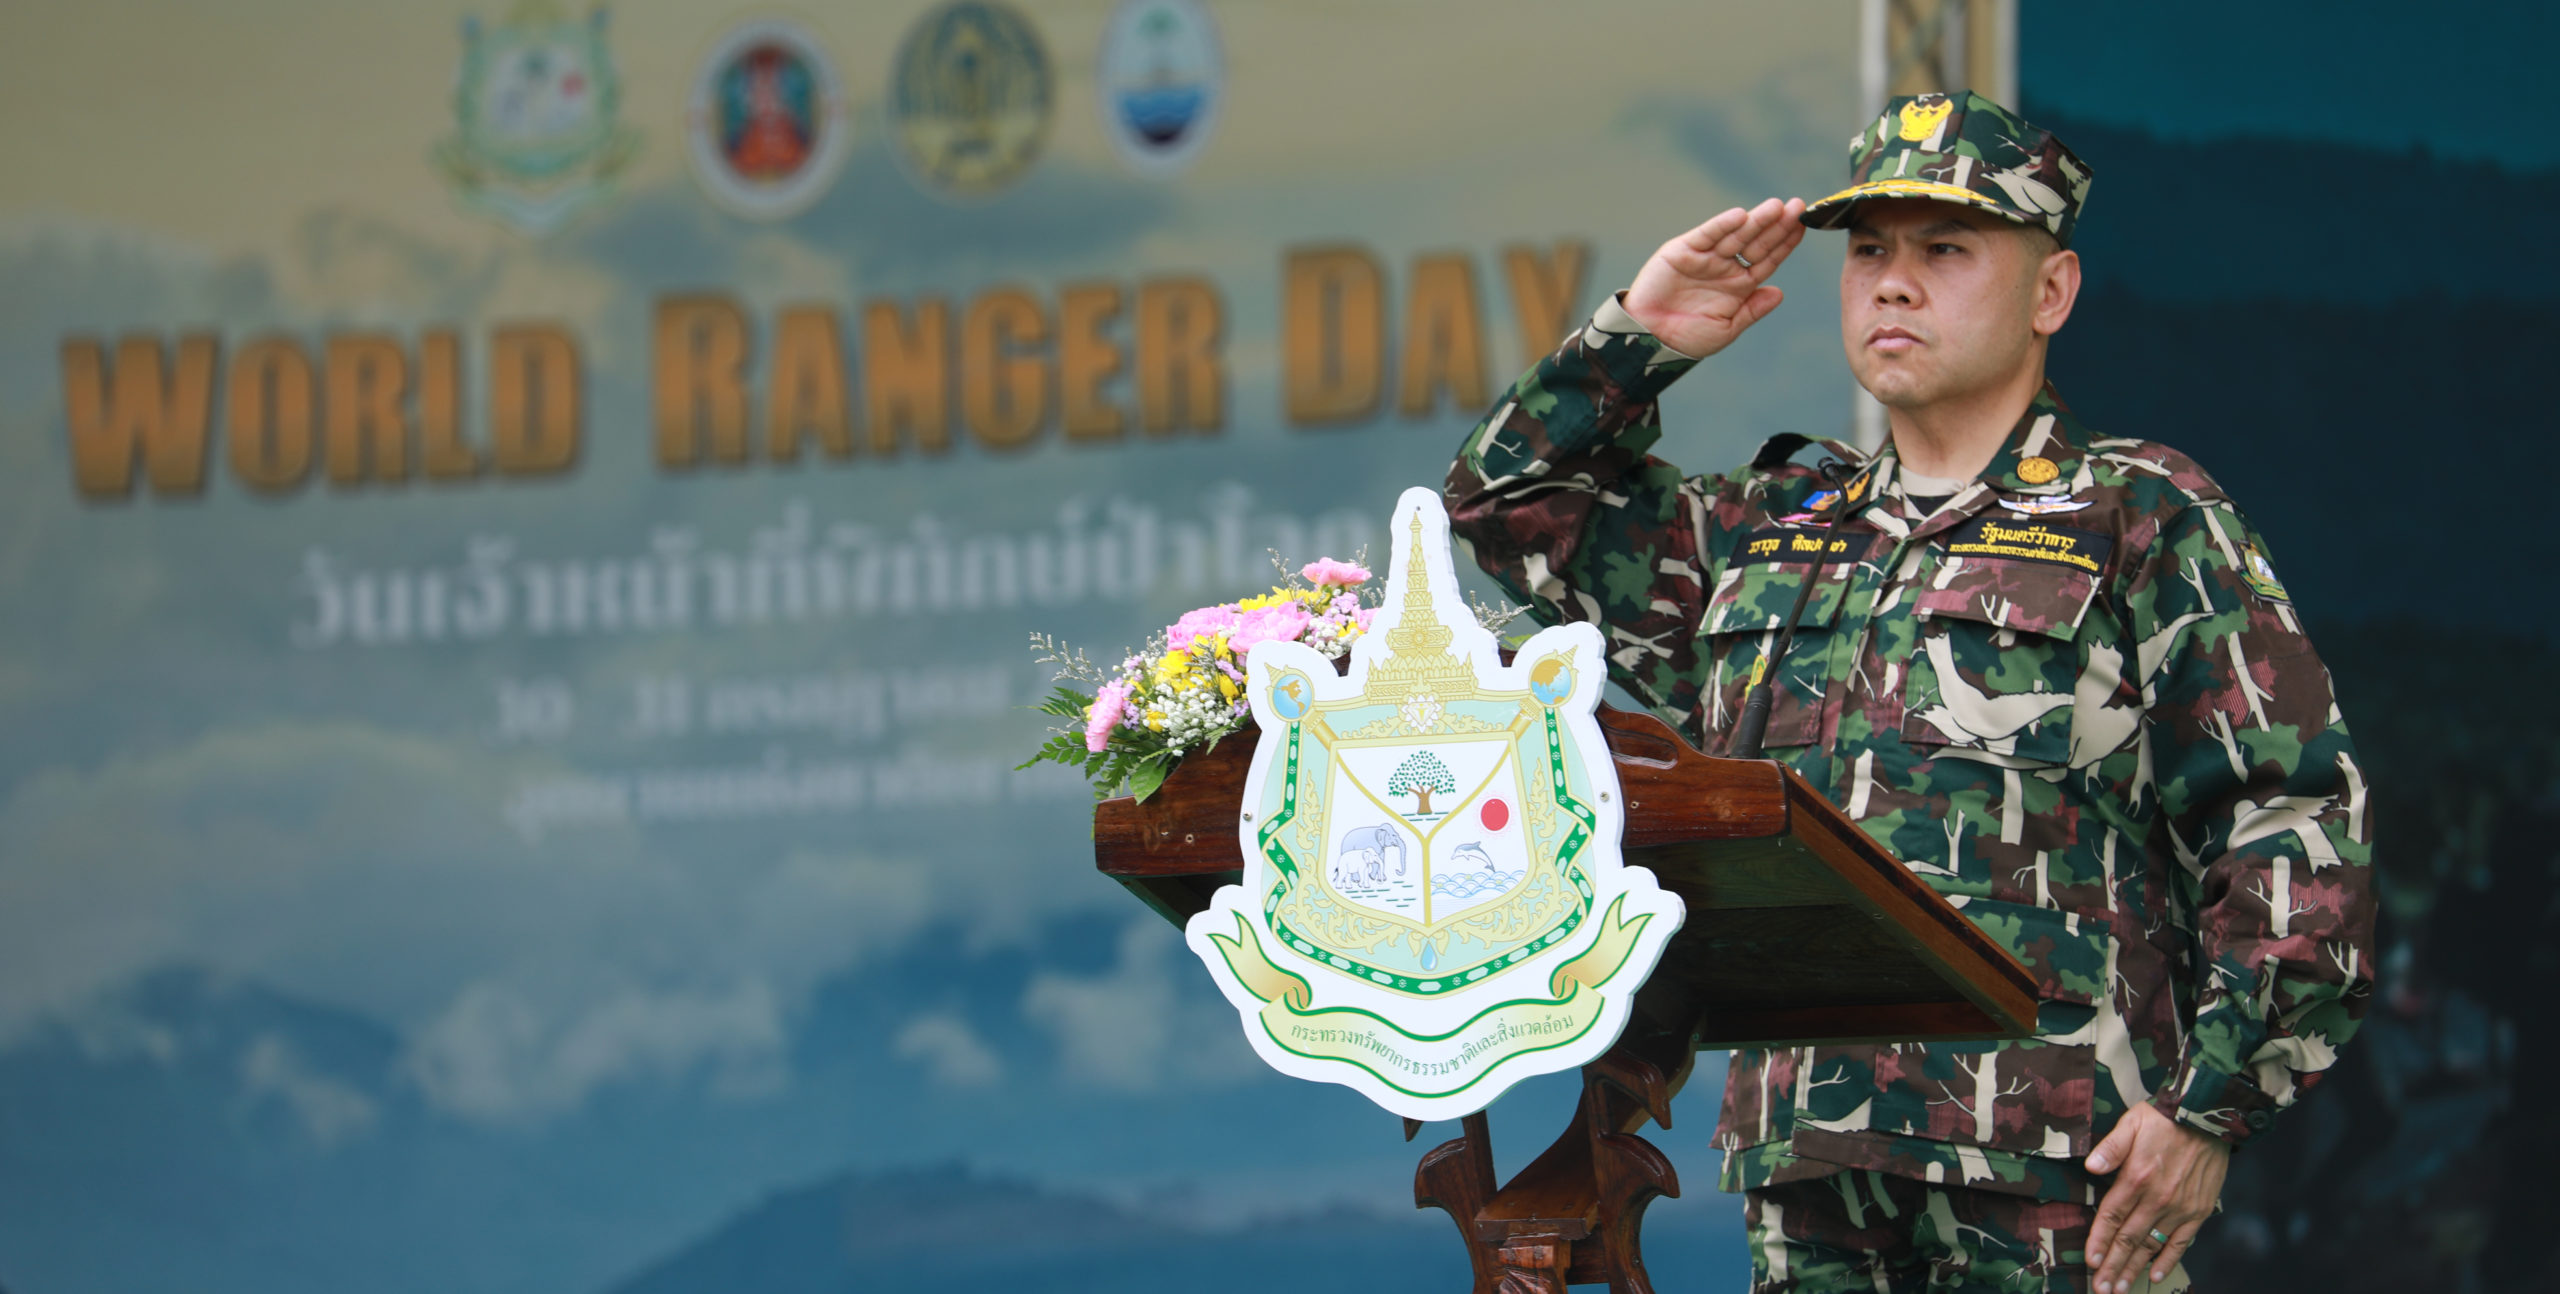 นายวราวุธ ศิลปอาชา รัฐมนตรีว่าการกระทรวงทรัพยากรธรรมชาติและสิ่งแวดล้อม เปิดงานวันเจ้าหน้าที่พิทักษ์ป่าโลก (World Ranger Day) ประจำปี 2565